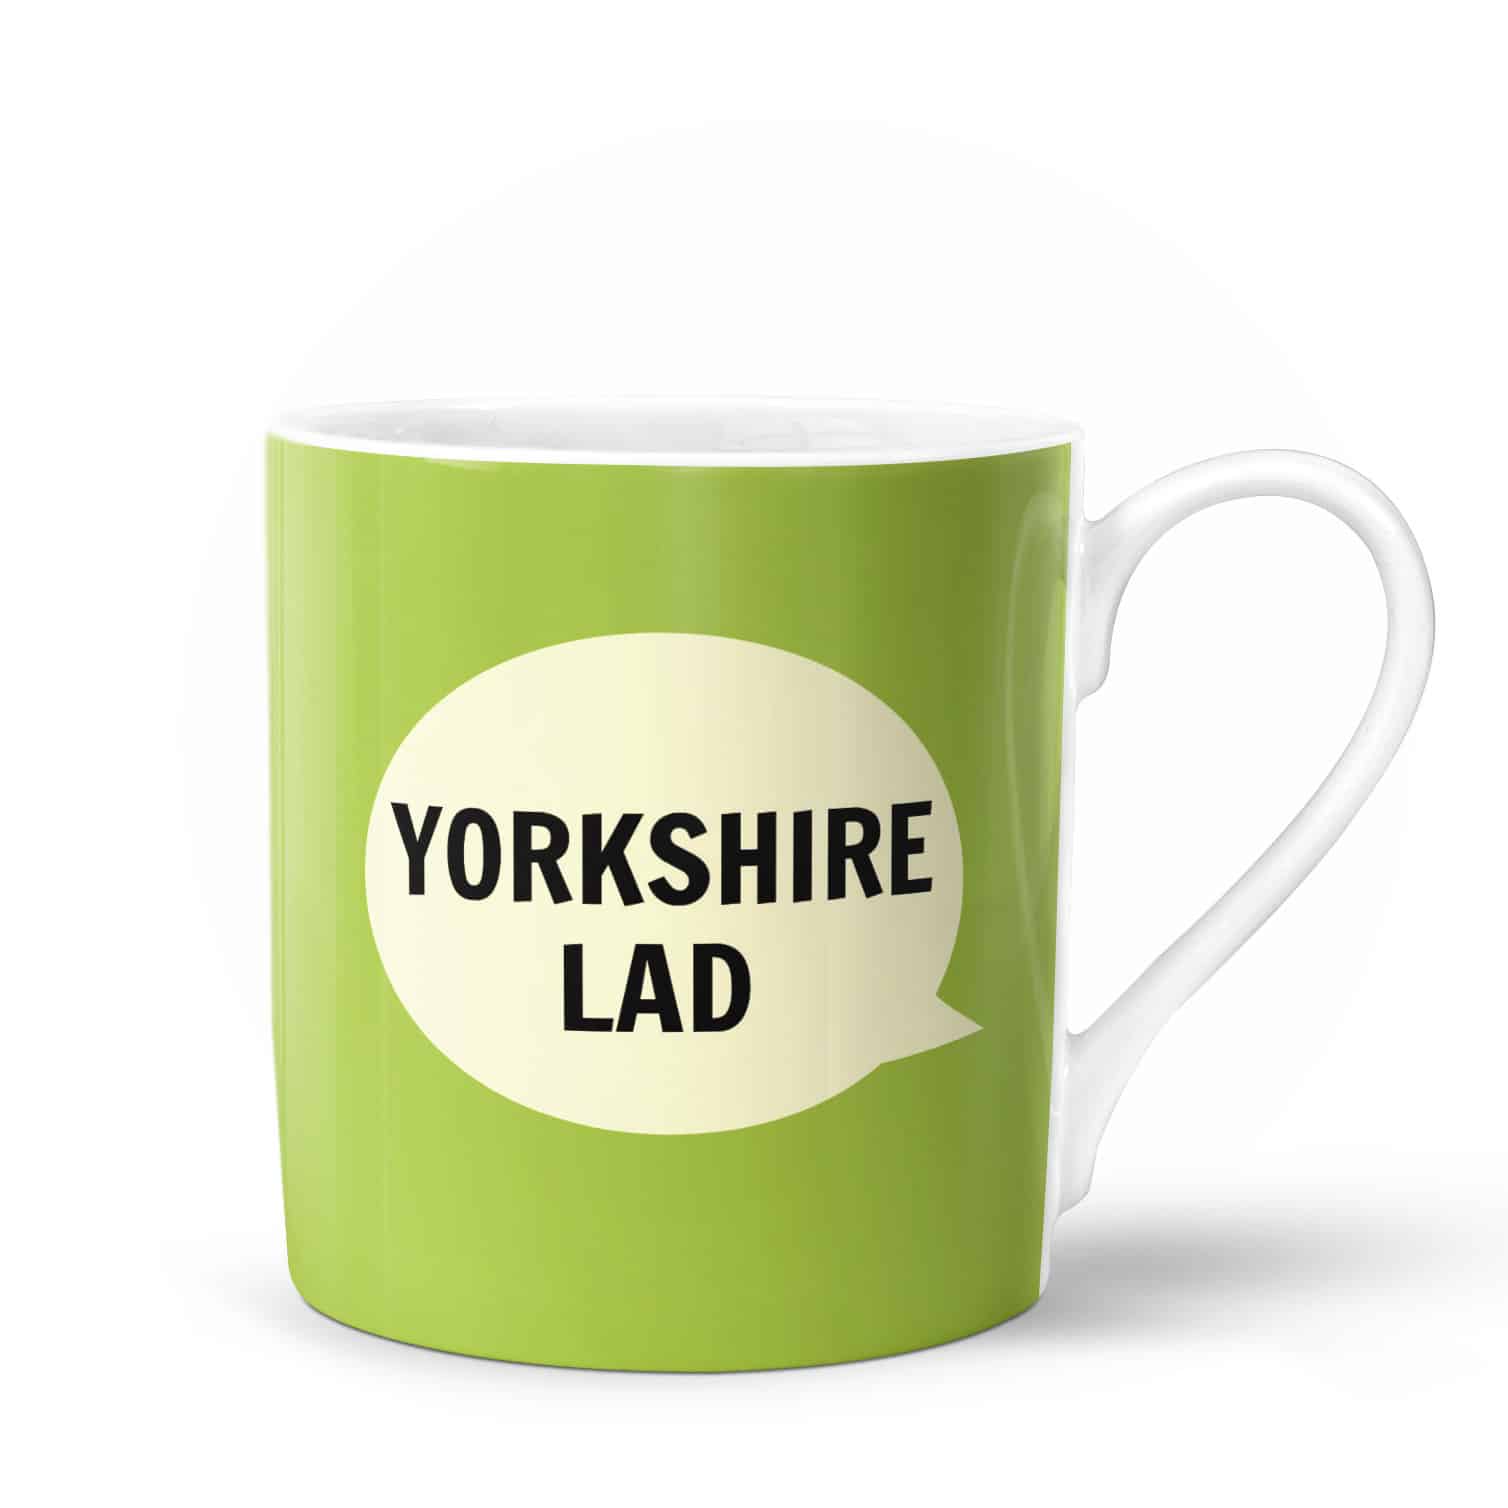 Yorkshire Mug - 'Yorkshire Lad'